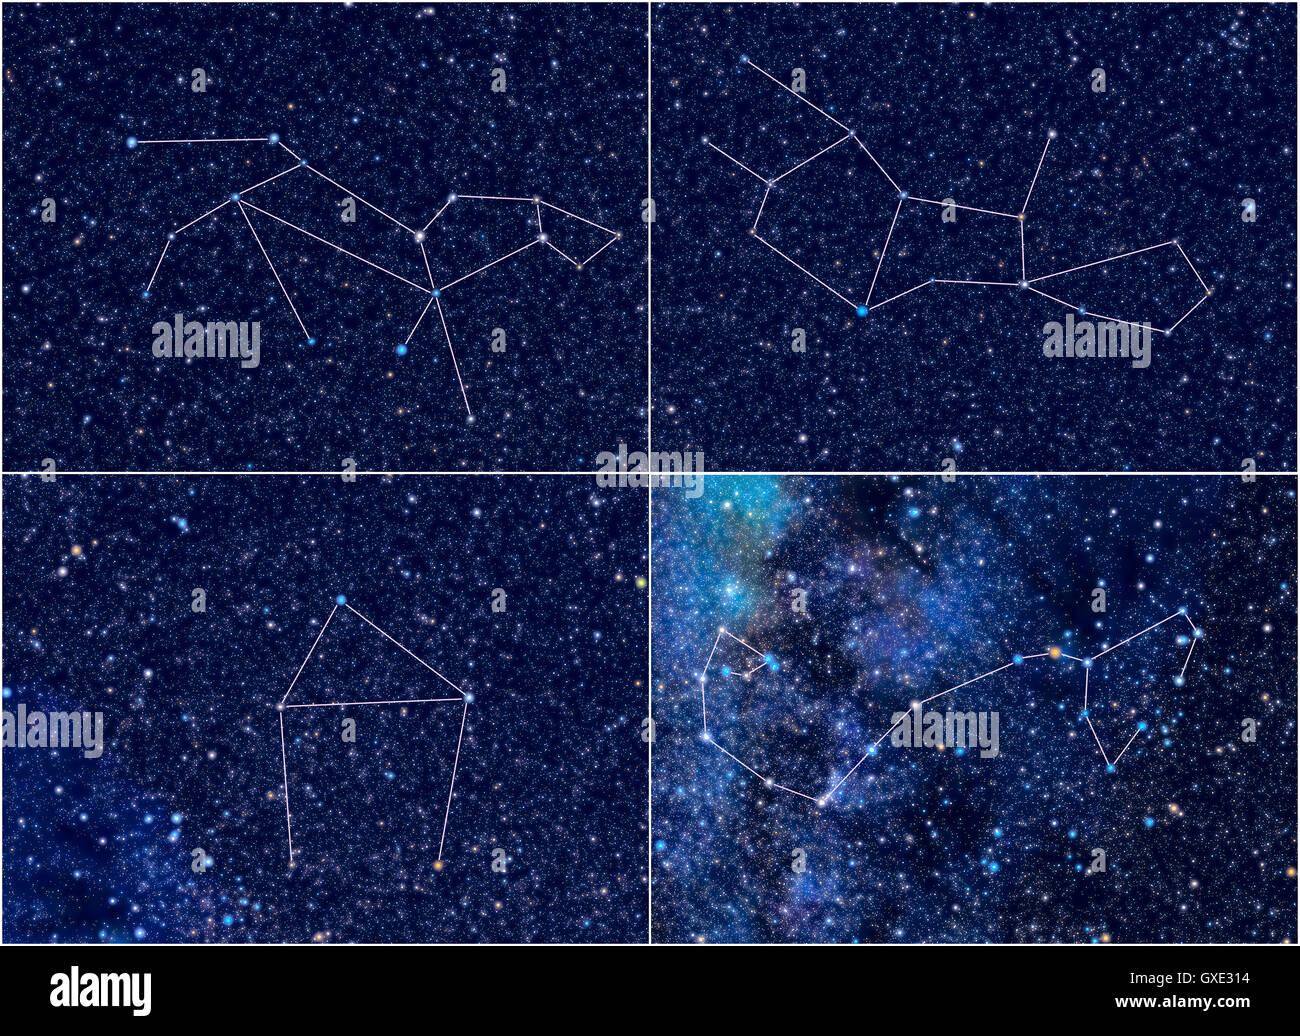 L'espace univers / Astronomie / astrologie abstract background / contexte illustration : quatre constellations de zodiaque. Banque D'Images